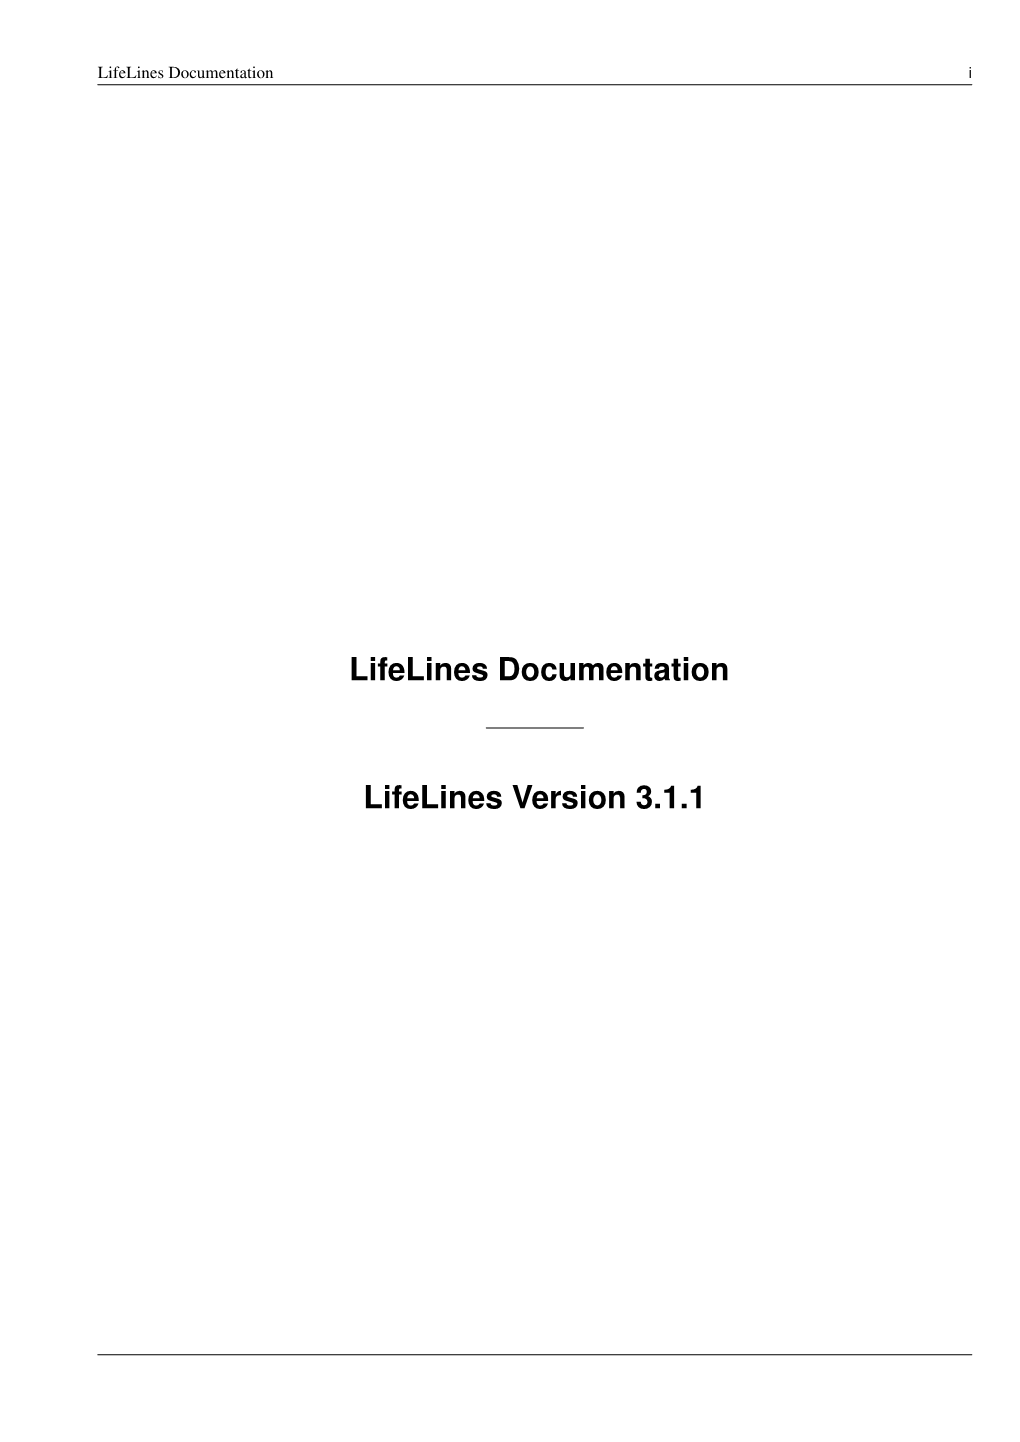 Lifelines Documentation I